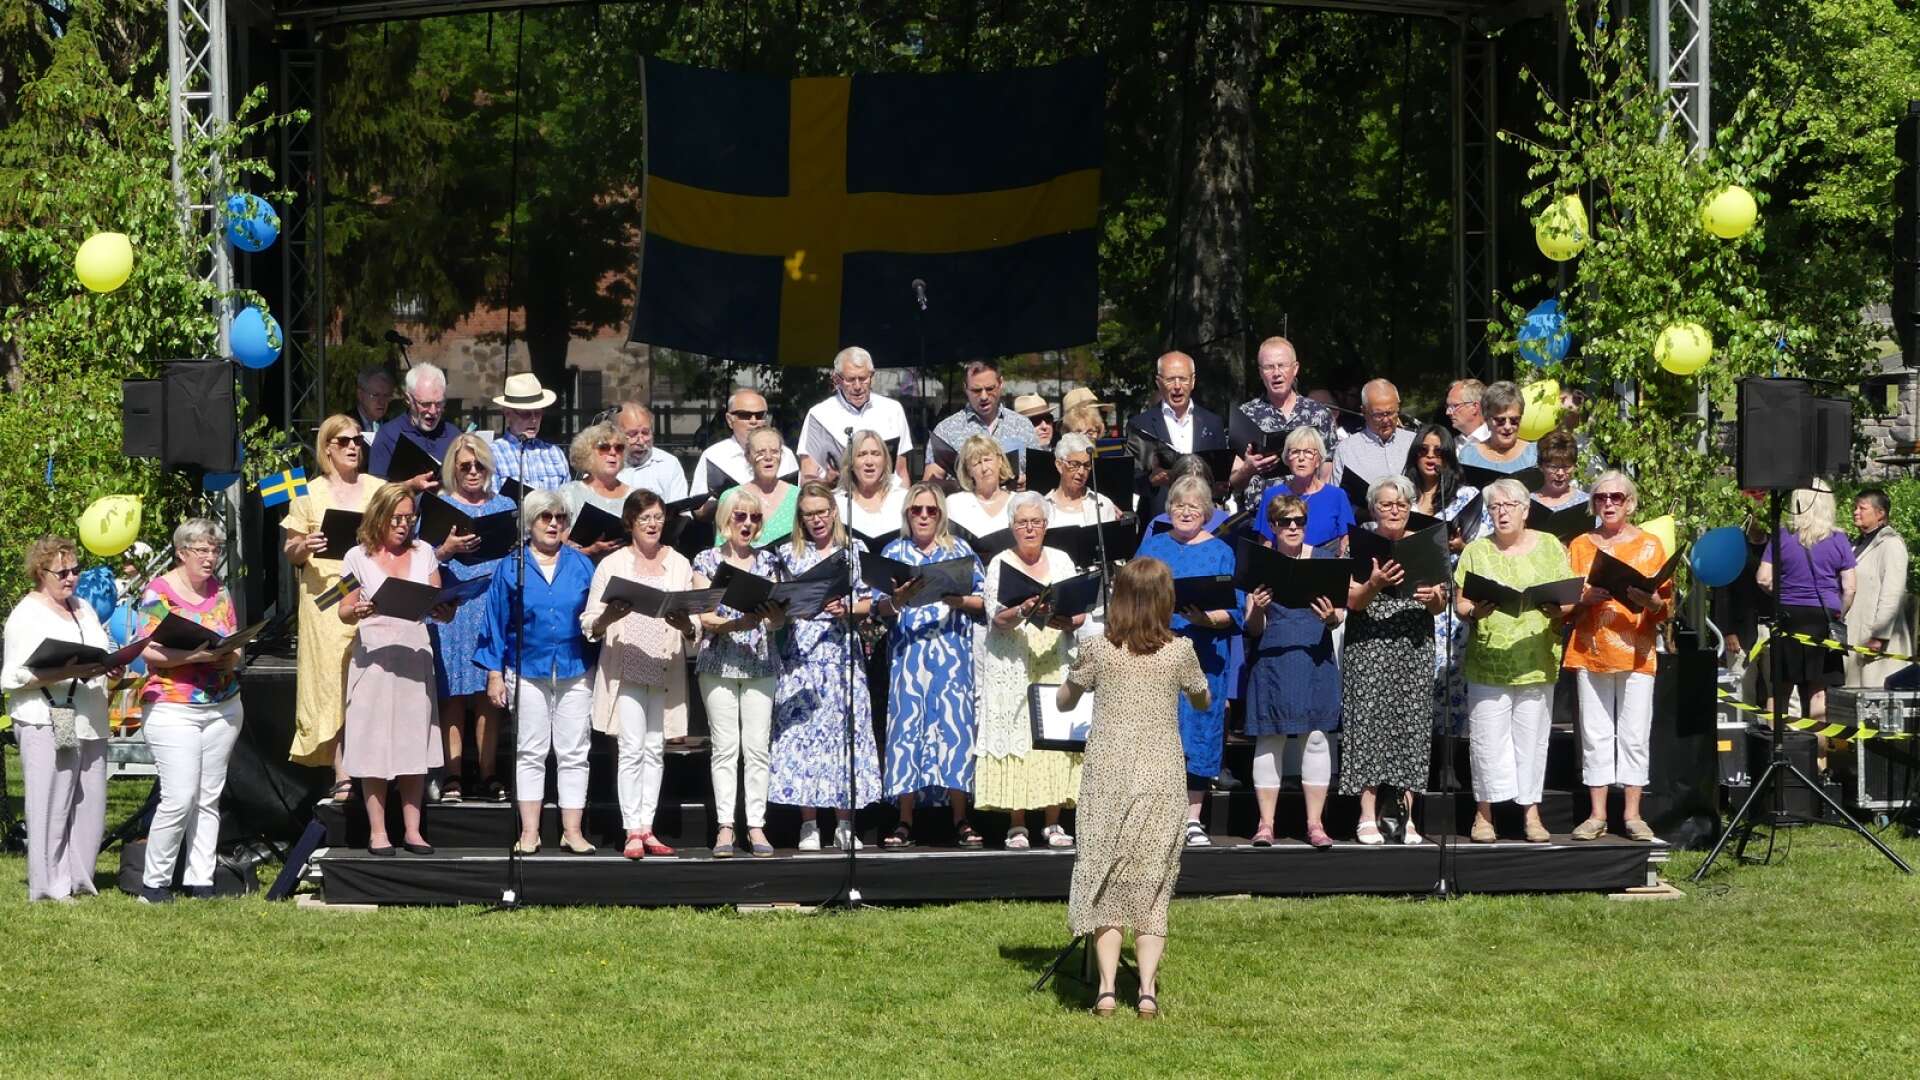 Det blir som vanligt nationaldagsfirande i Kanalparken. Bilden togs i samband med förra årets firande.